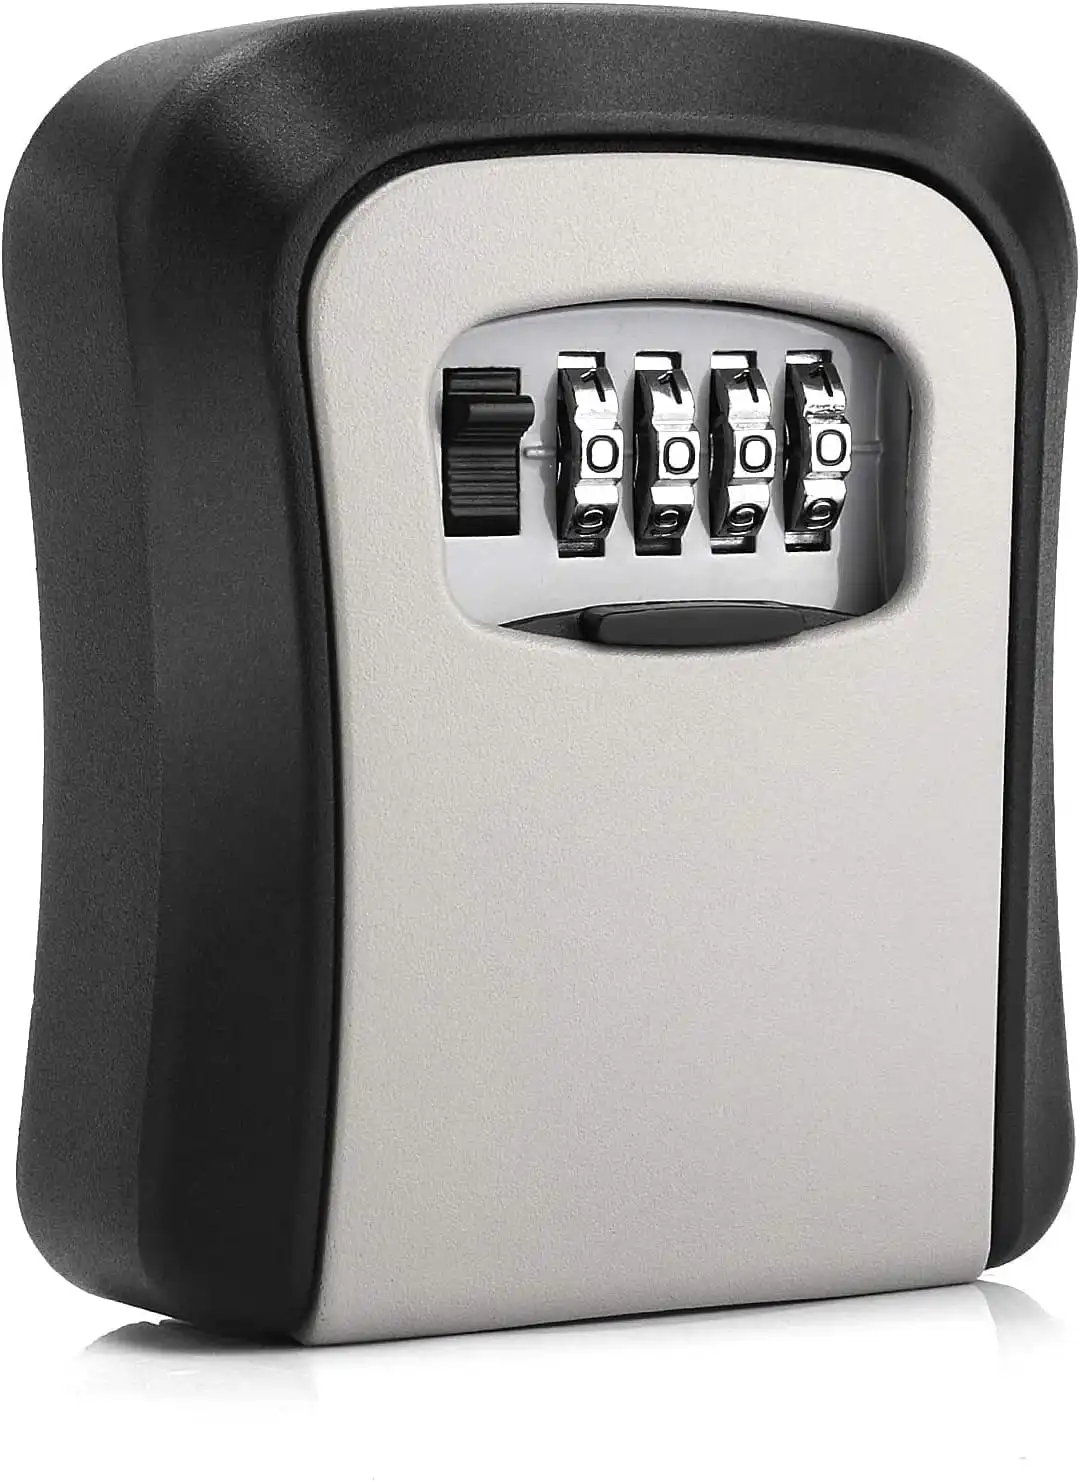 Key Lock Box Wall Mounted, Waterproof Key Storage, 5 Keys Capacity, Re-Settable Code, Indoor/Outdoor